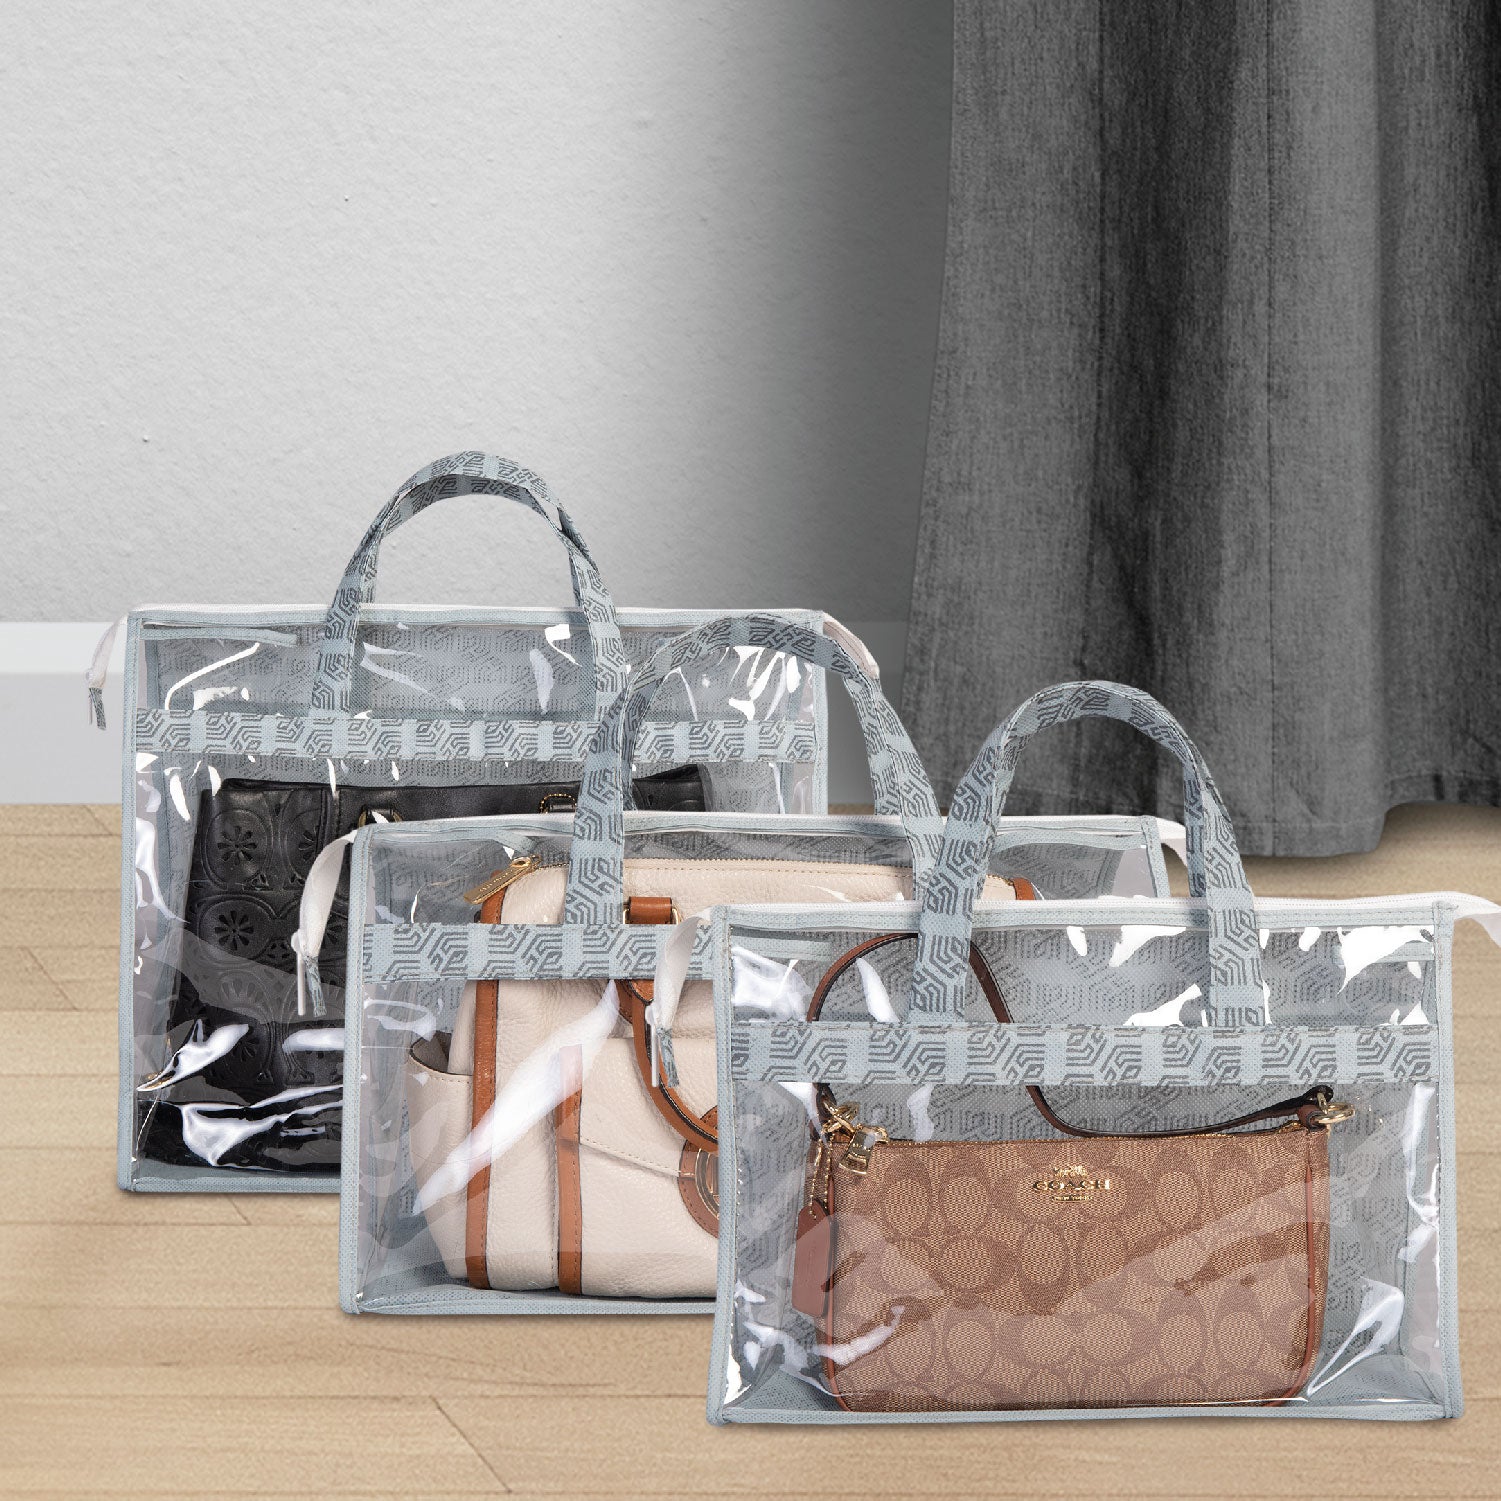 Set of 3 Transparent Handbag Cover